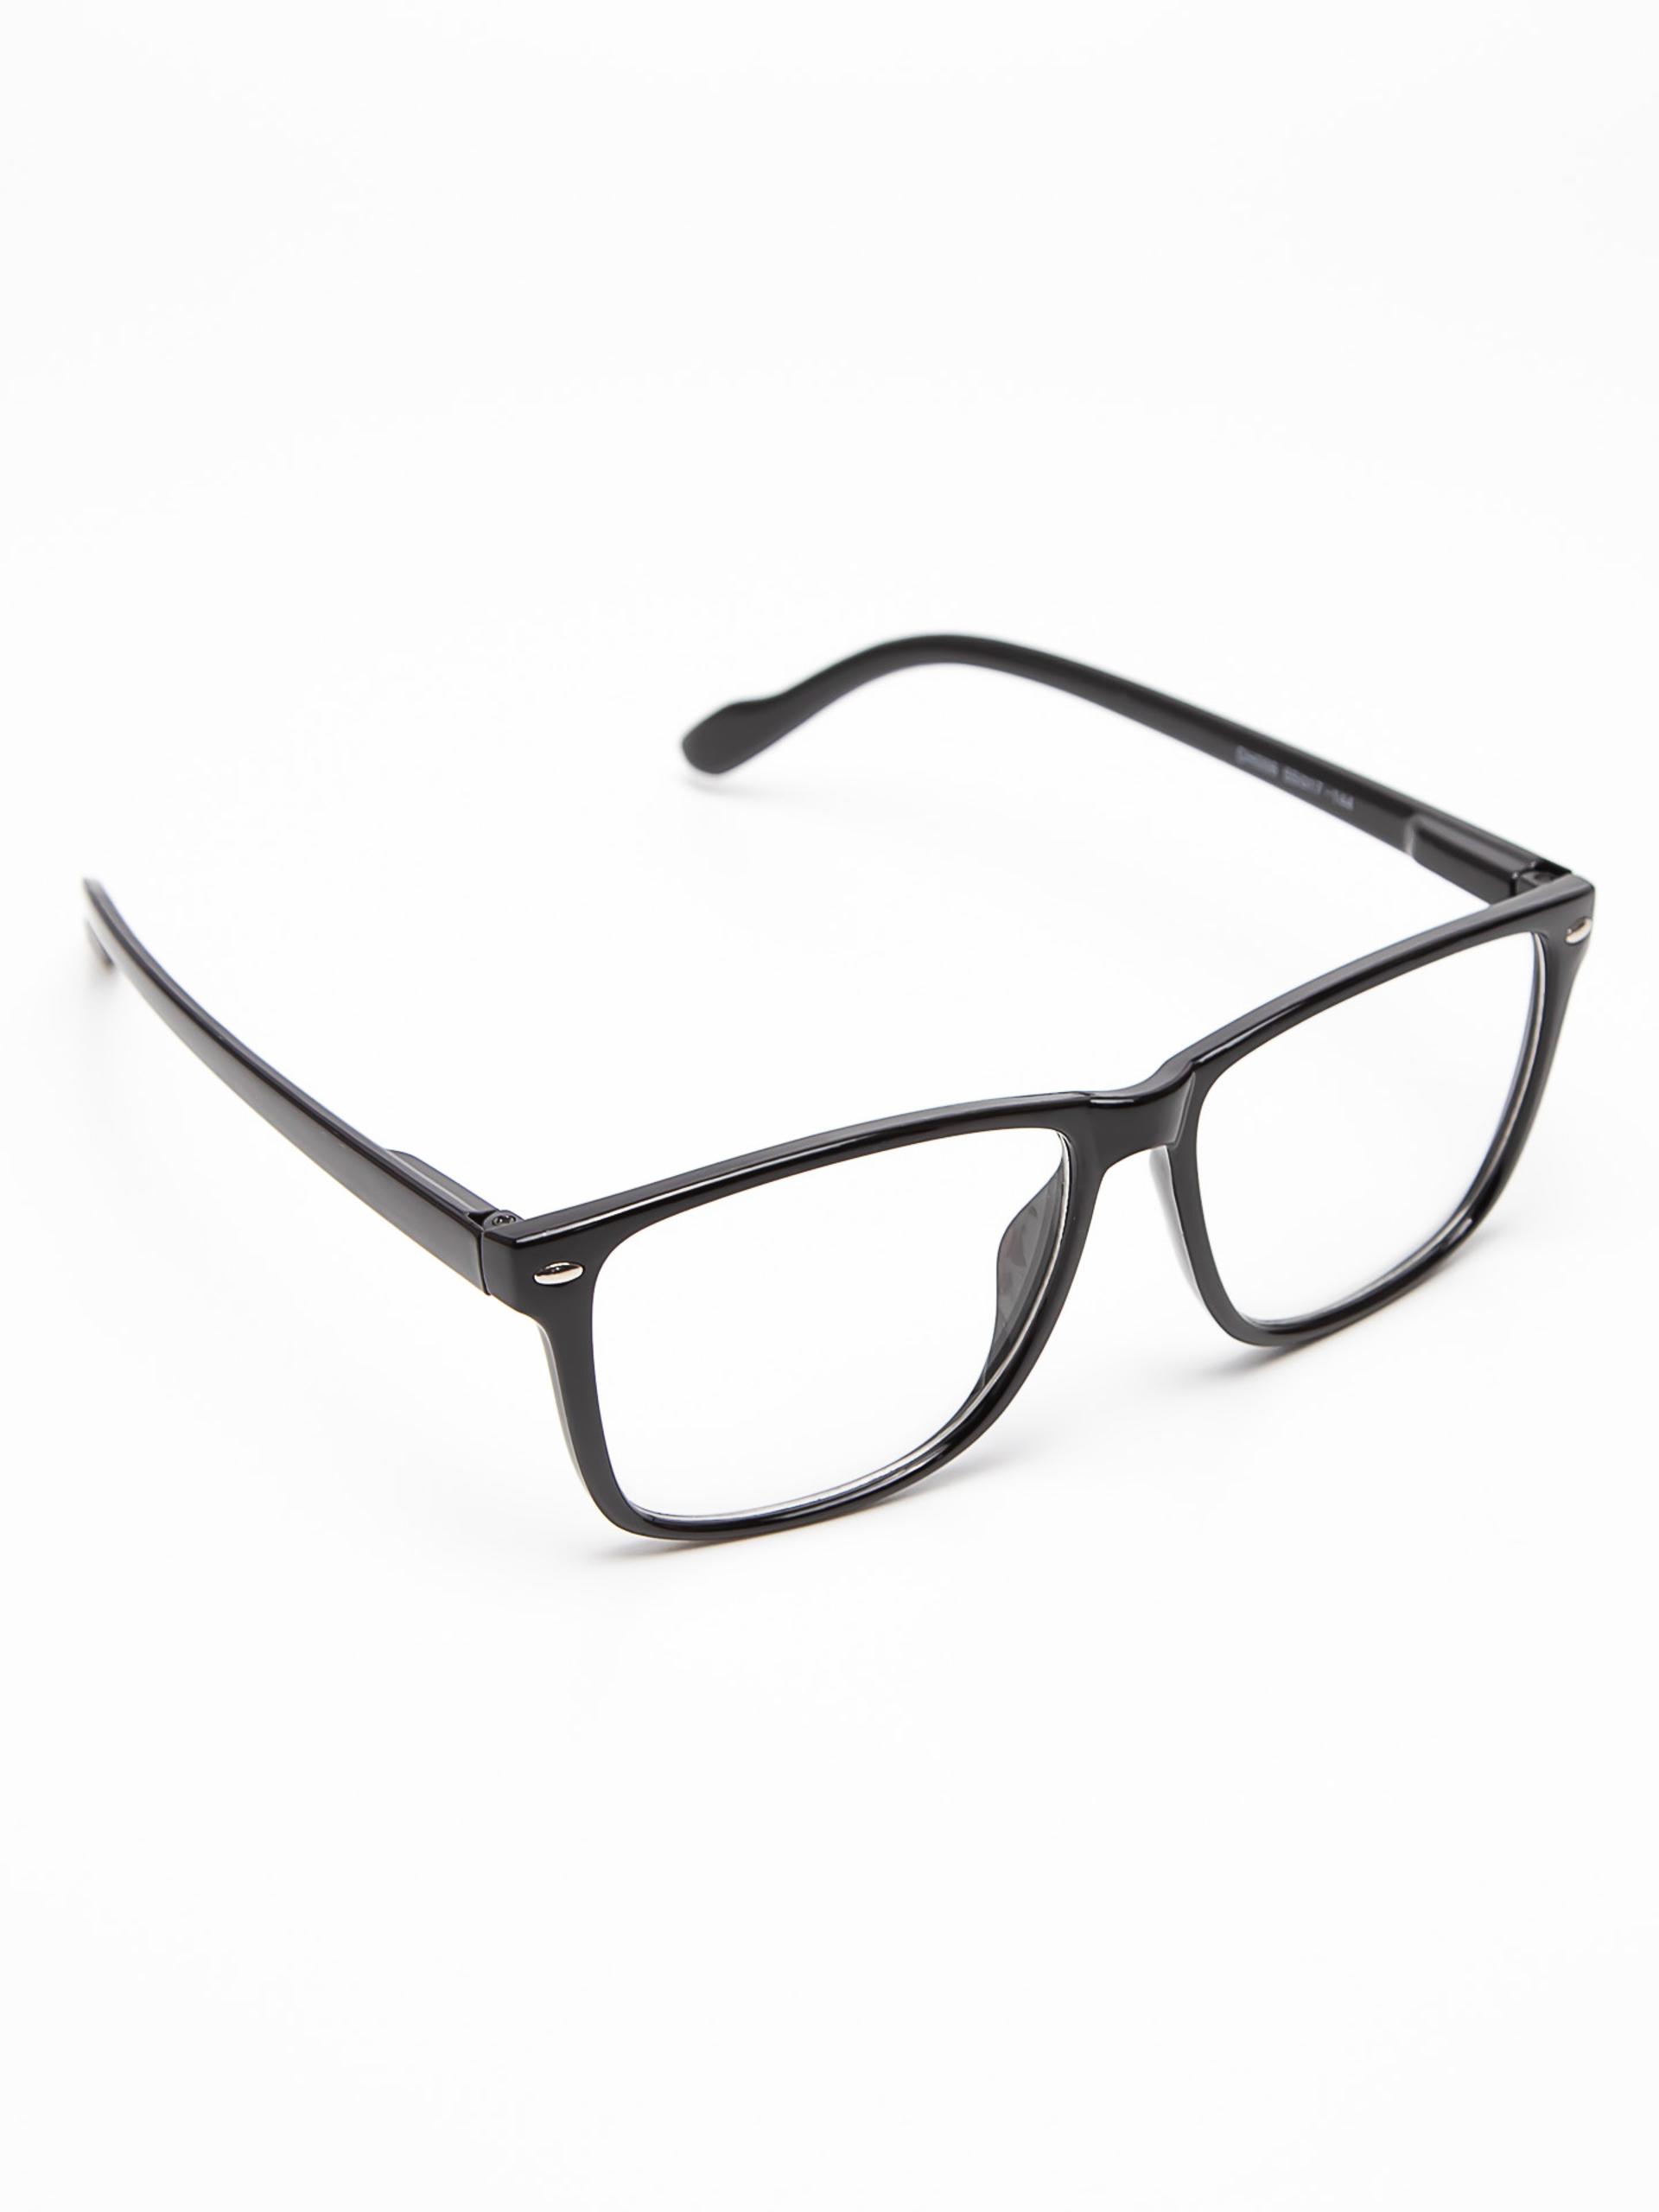 Товар - “Компьютерные очки со 100% защитой 006”